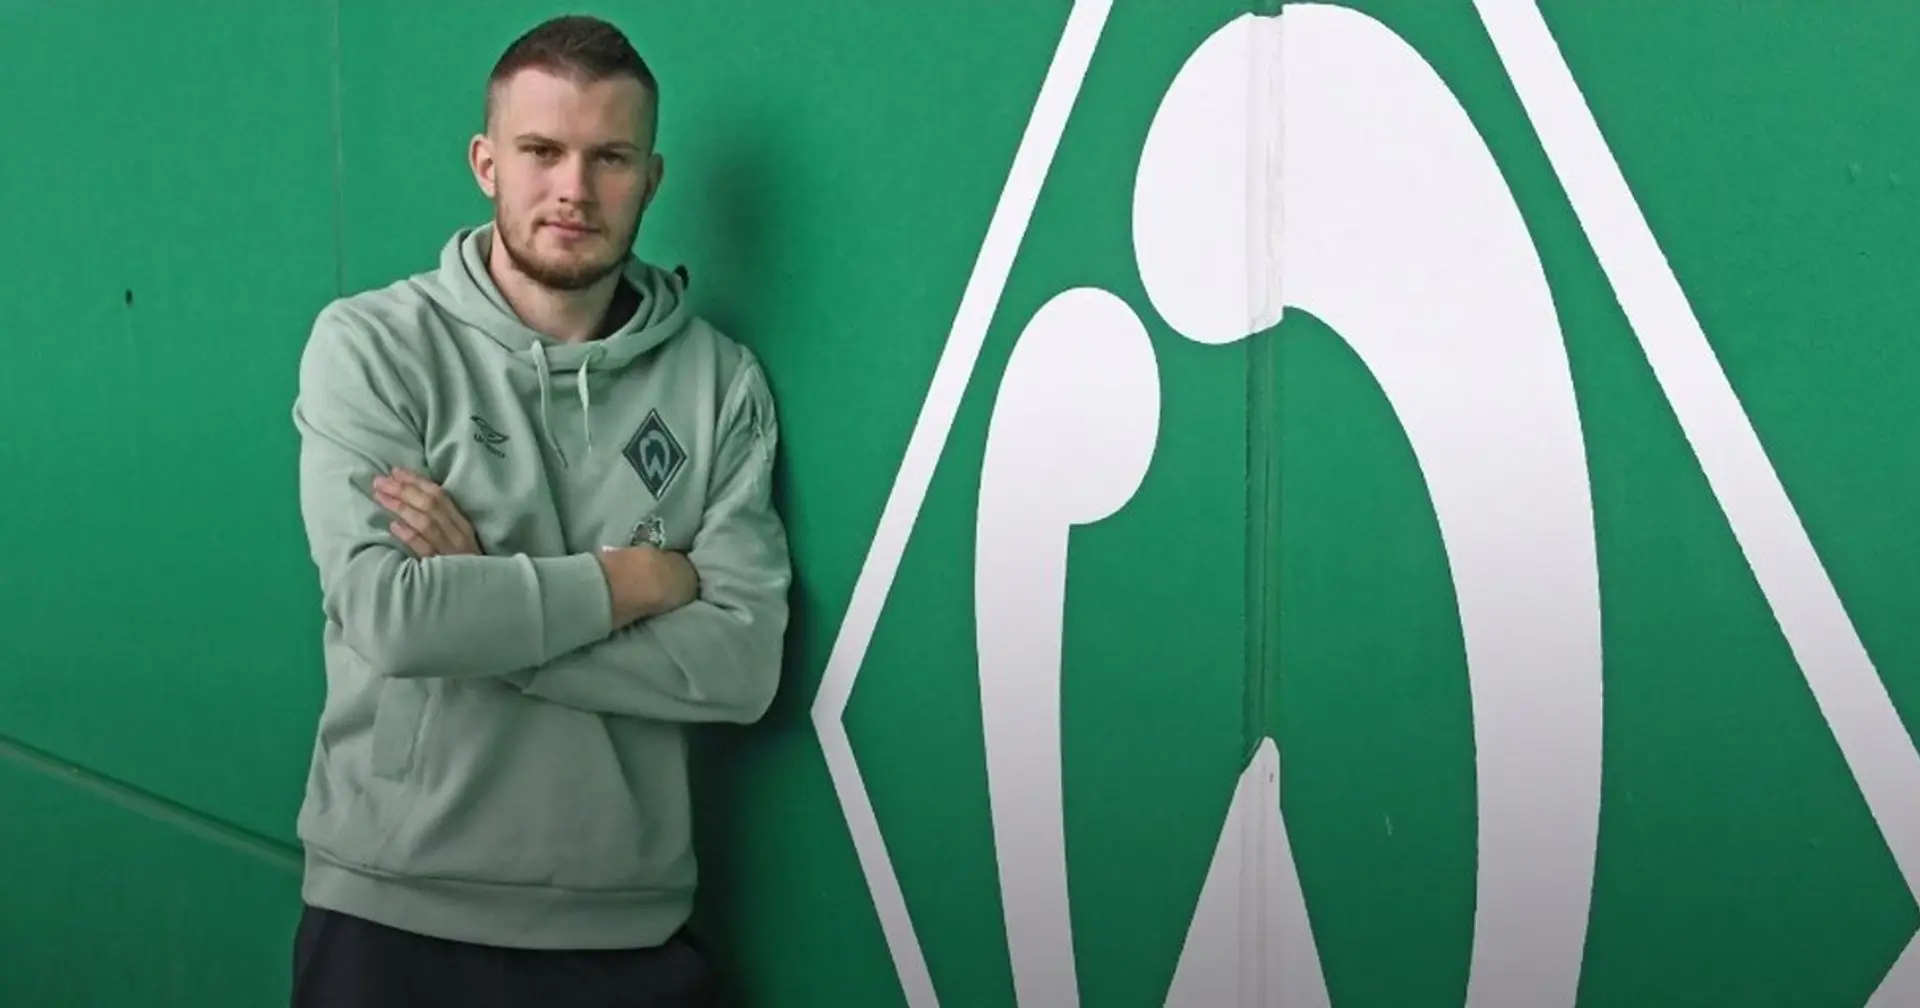 Mai freut sich über den Wechsel zu Werder: "Optimale Bedingungen, um mich weiterzuentwickeln"